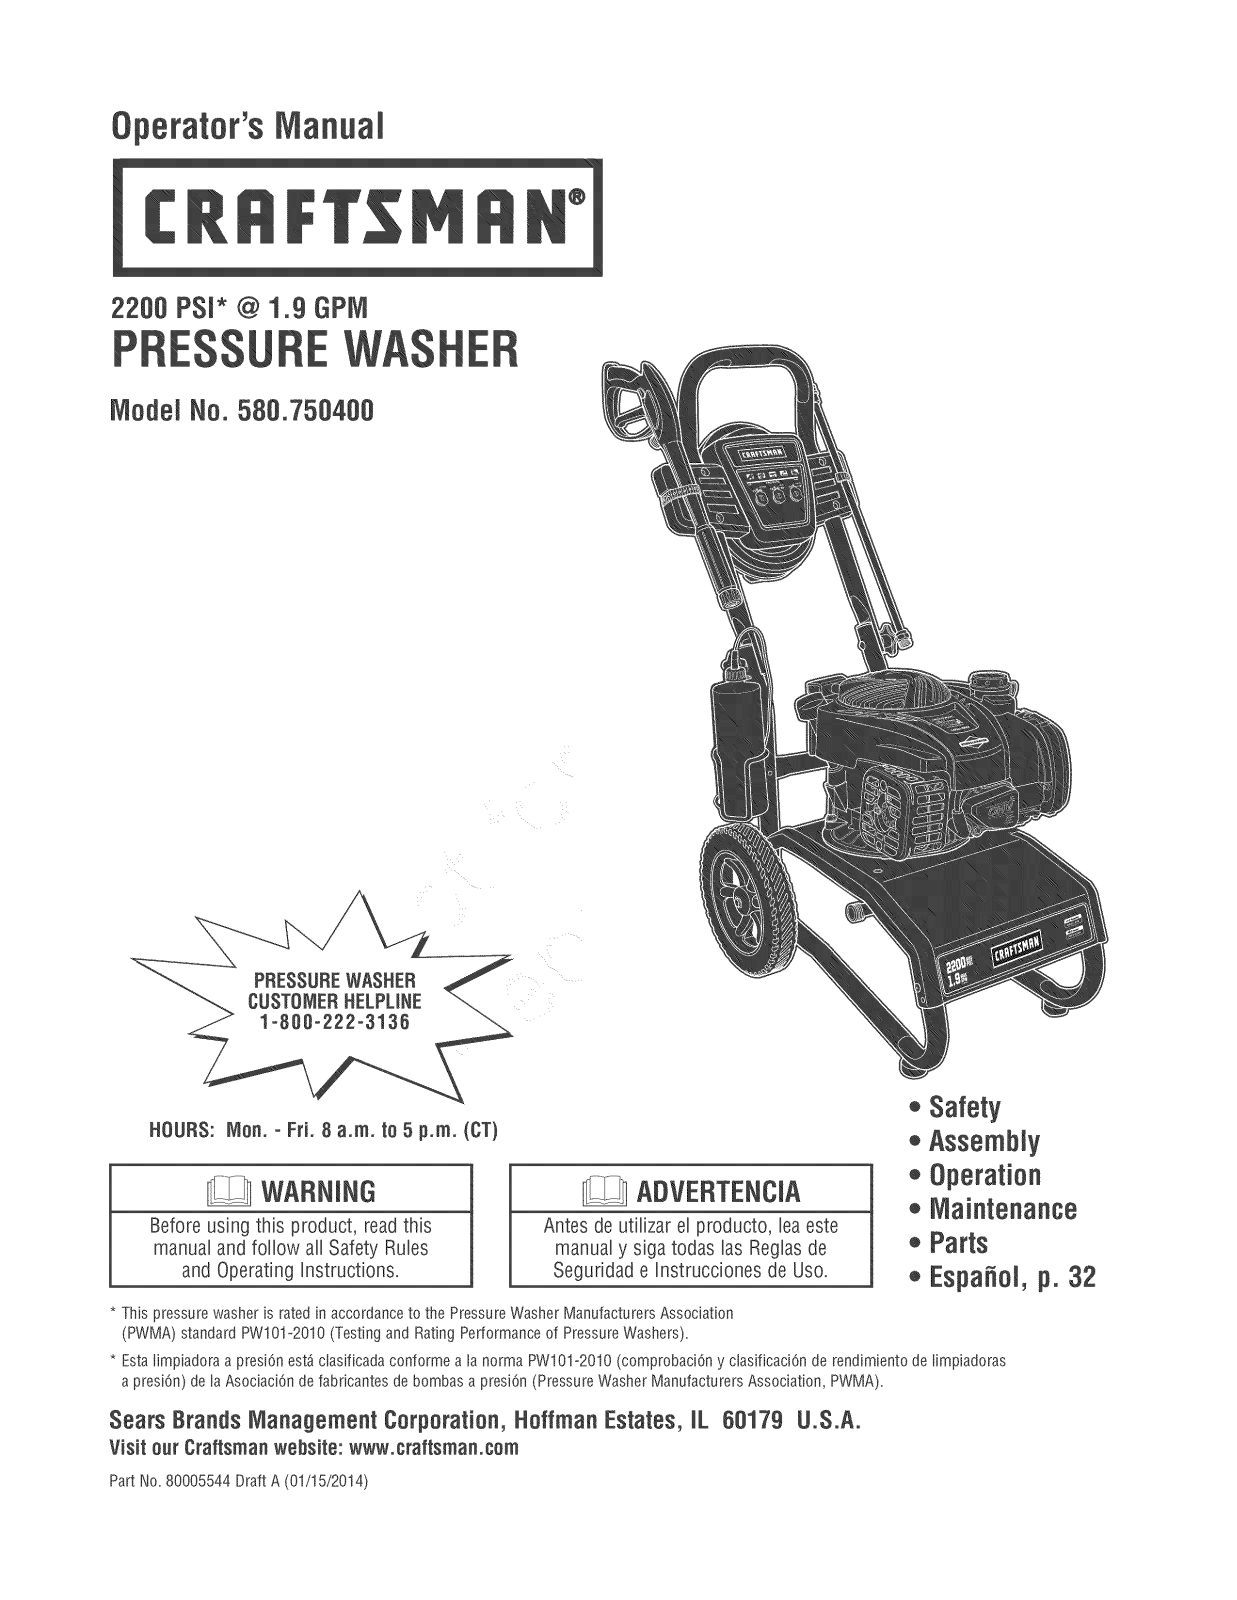 Craftsman 580.750400 User Manual